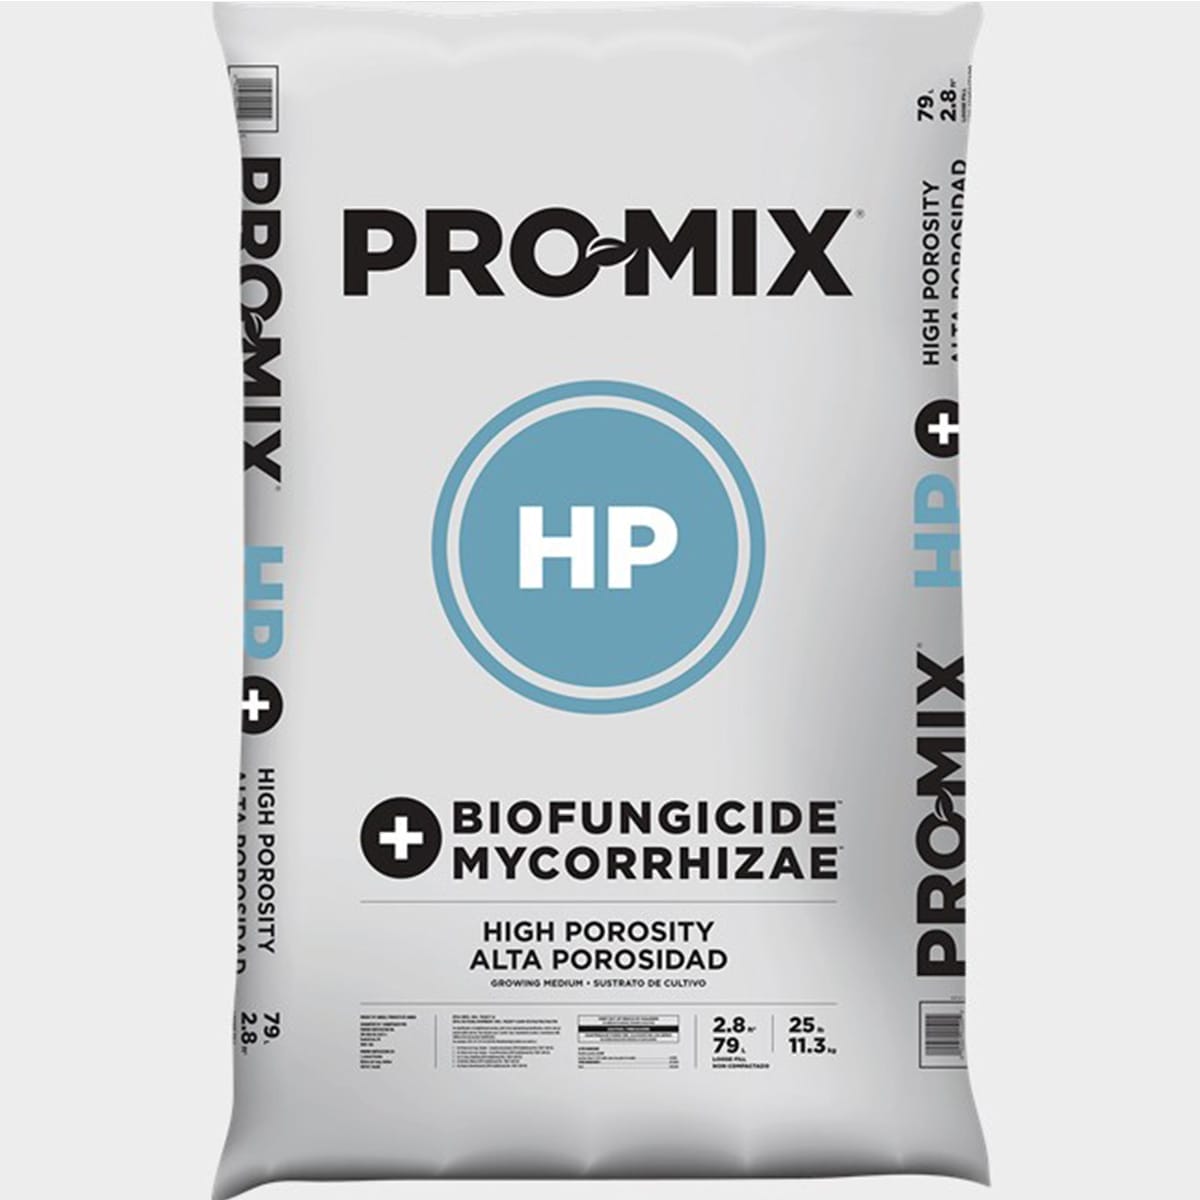 Pro Mix HP Mycorrhizae 2.8cuft